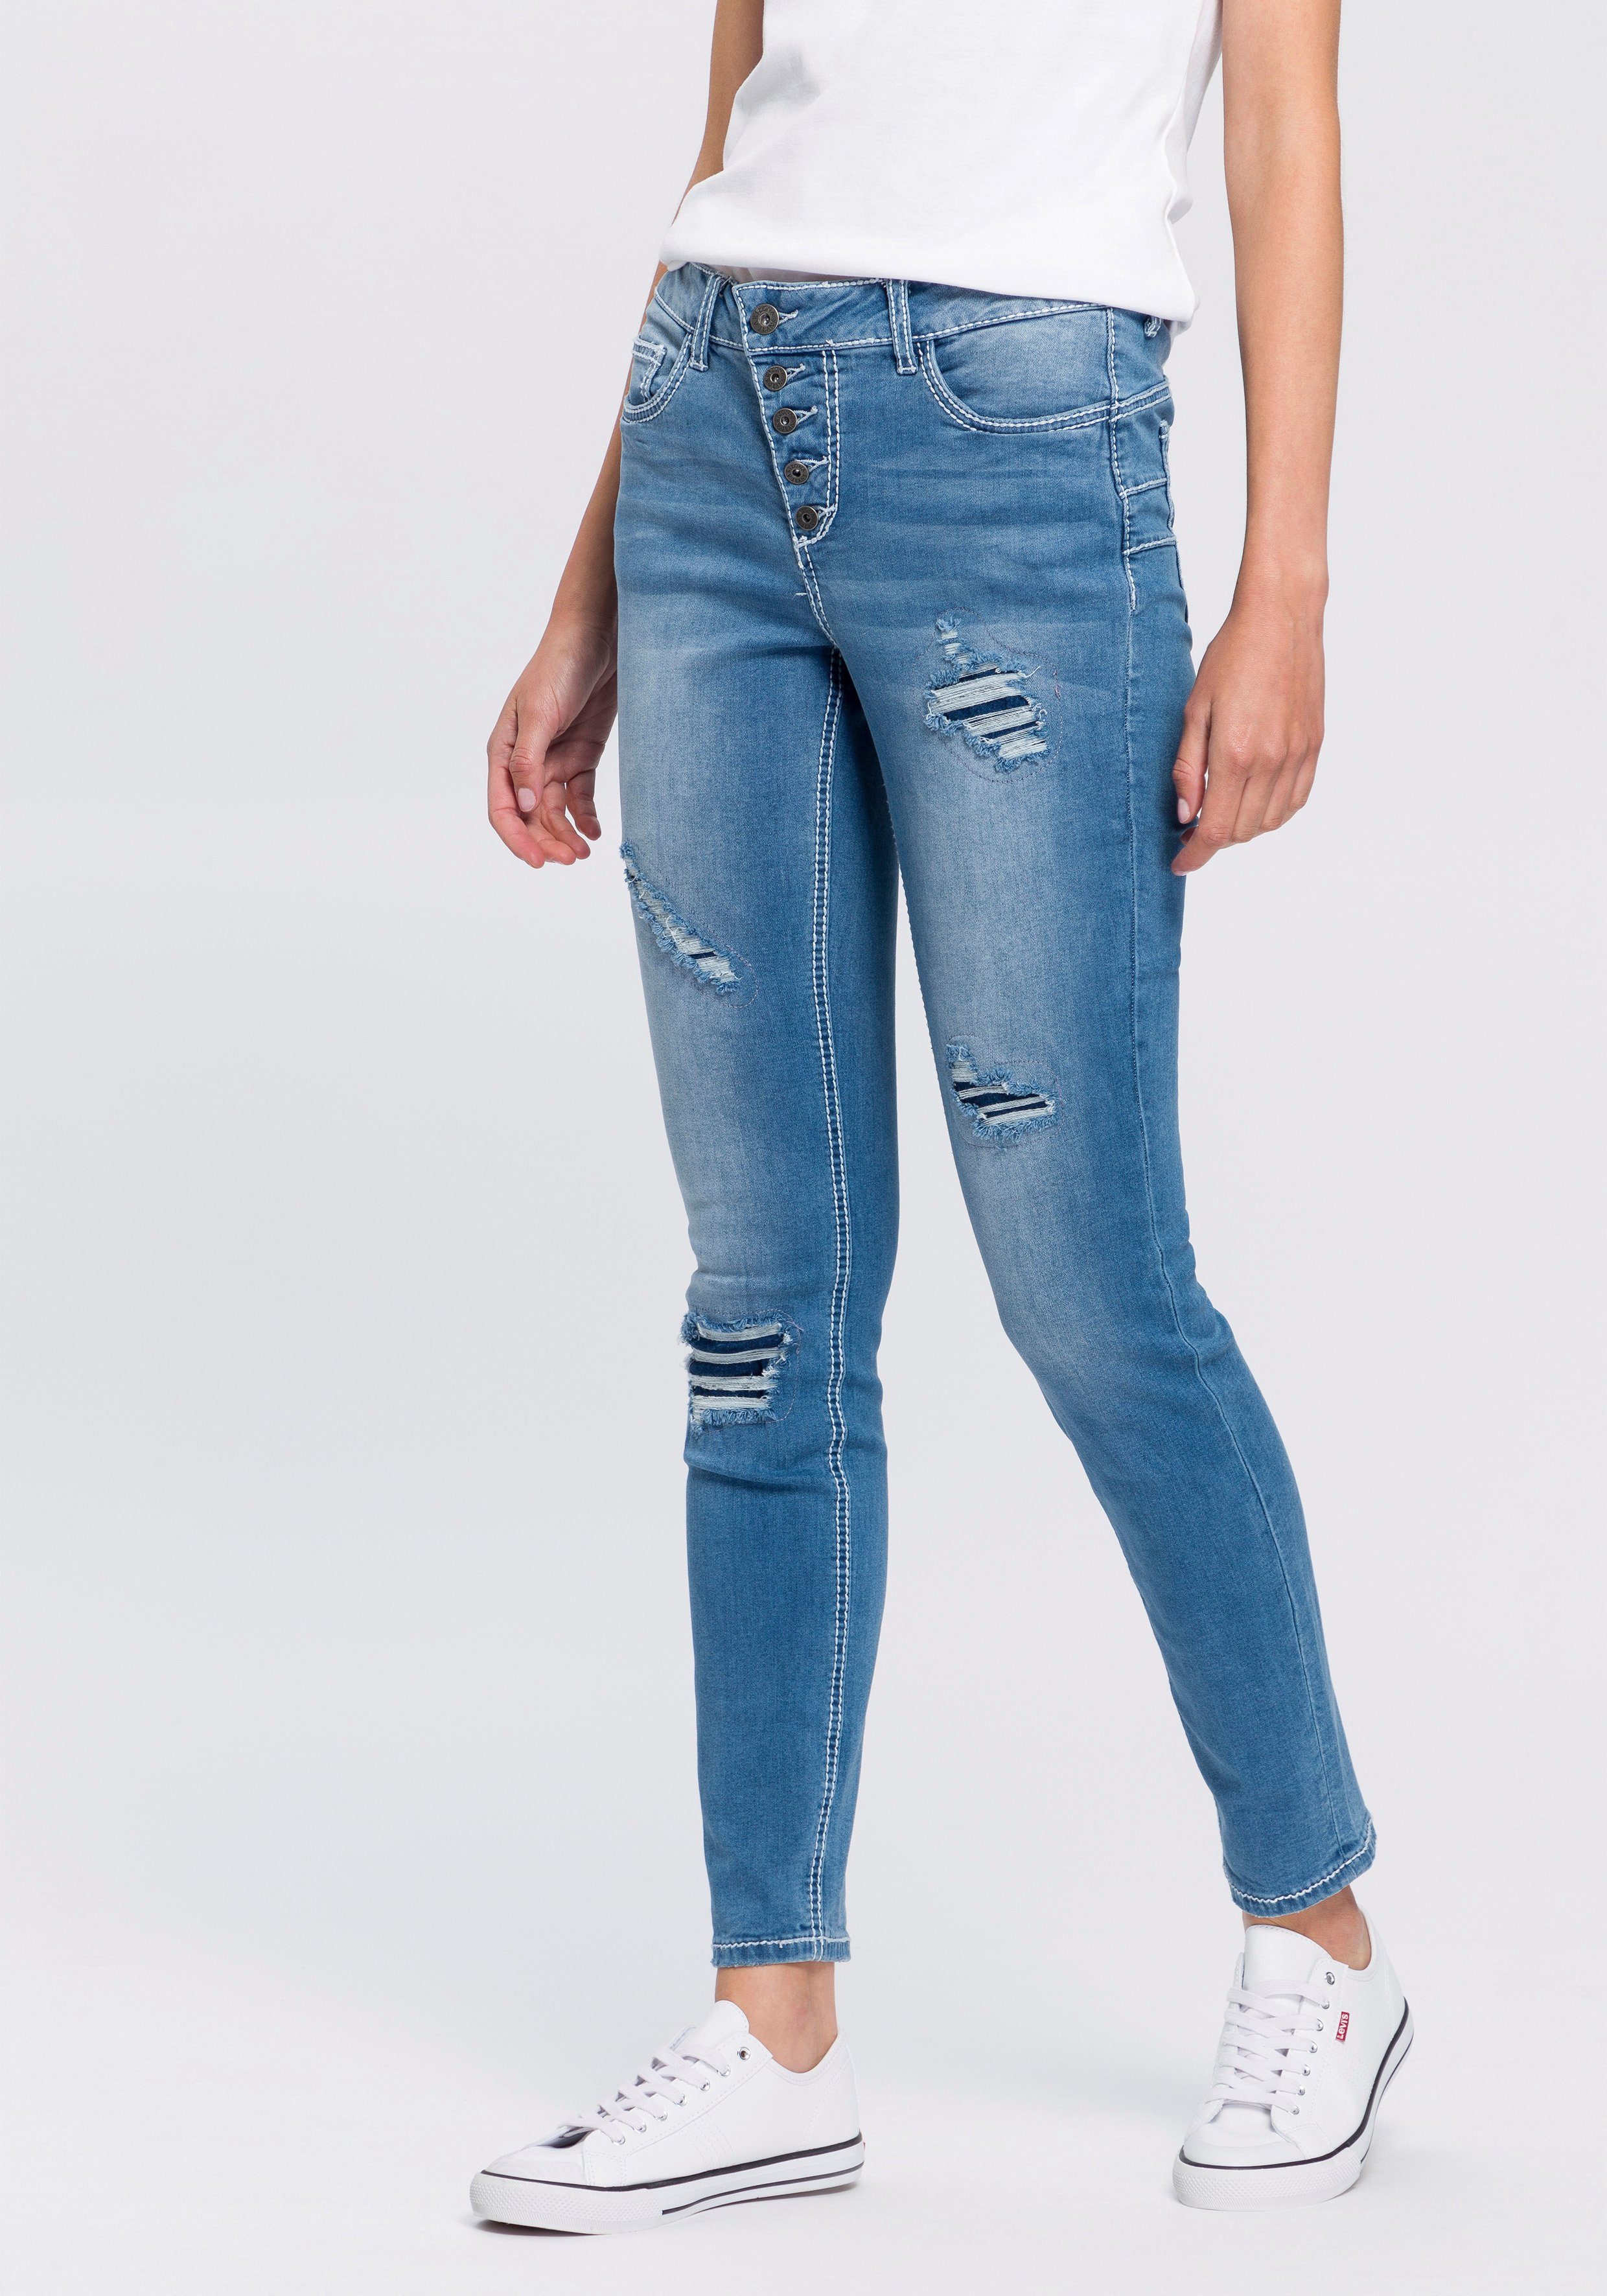 Knopfleiste Waist Arizona Mid mit Slim-fit-Jeans schräger sichtbarer,